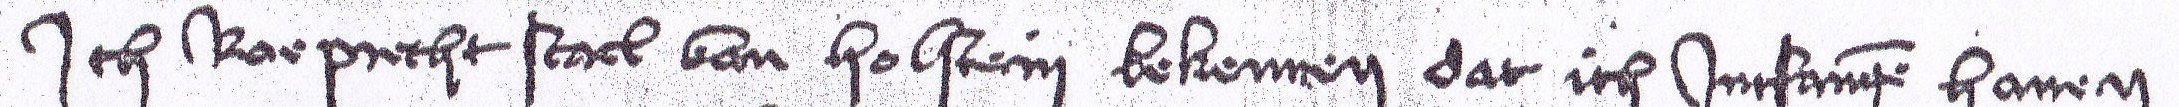 Urkunde vom 2.12.1440: "Ich Roprecht Stael von Holstein..."